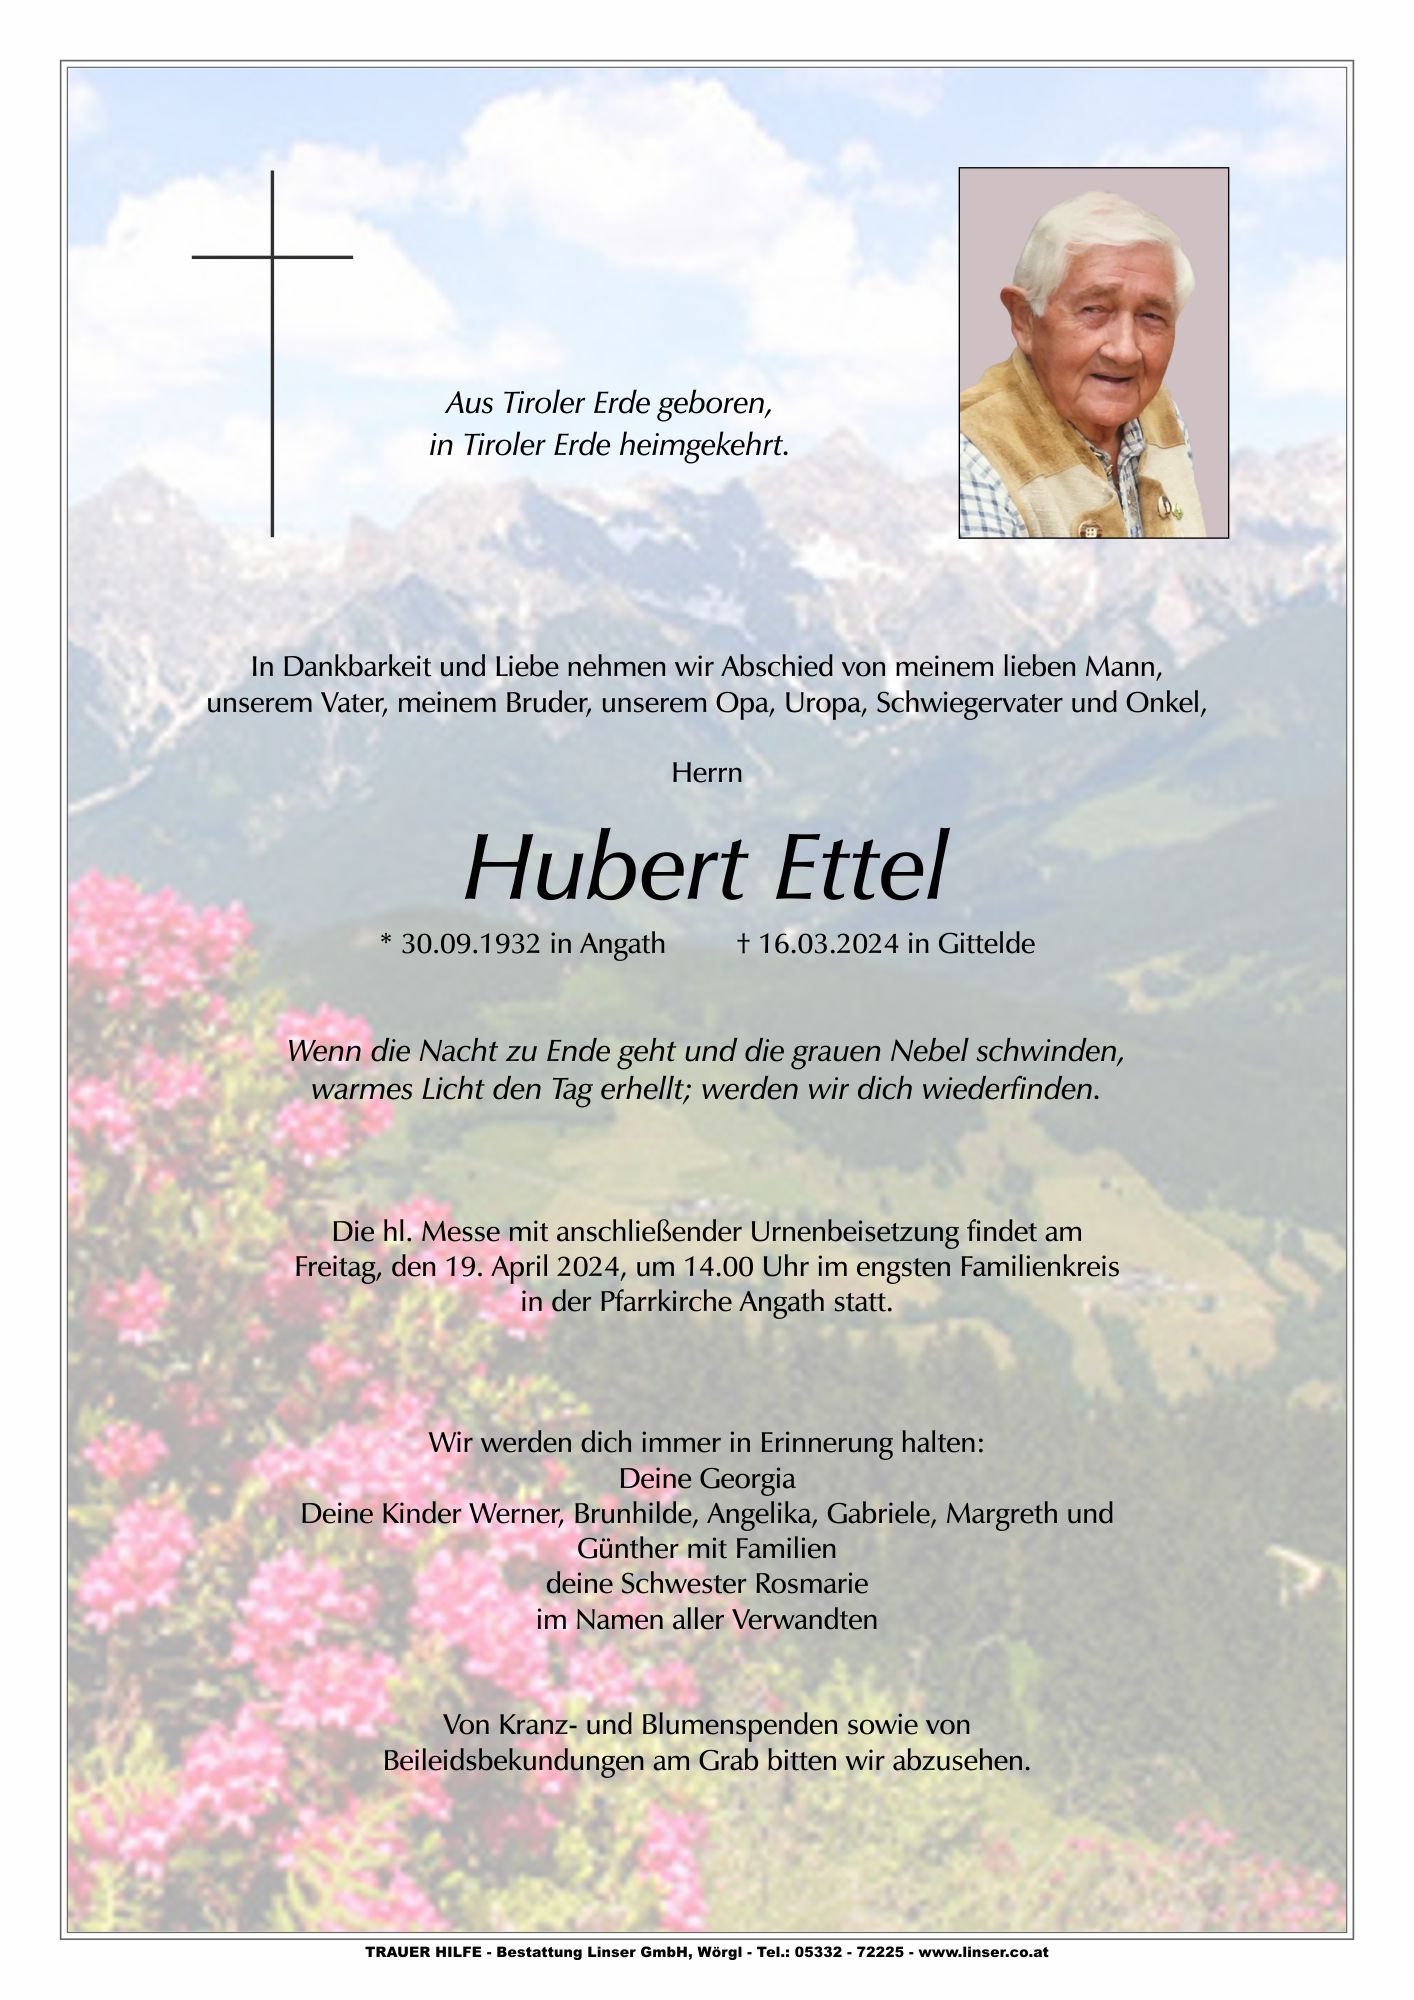 Hubert Ettel